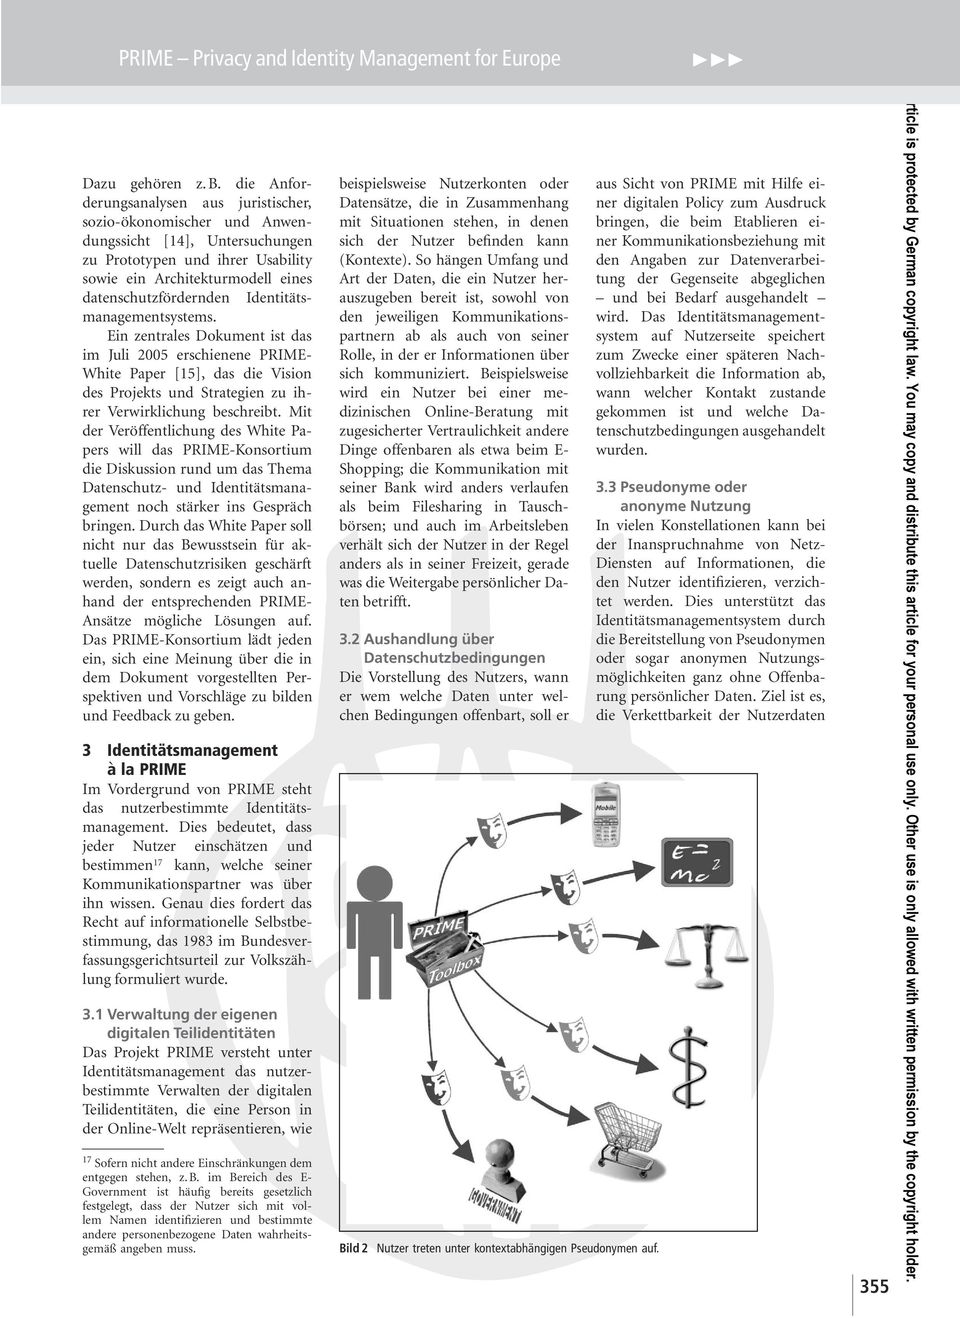 Identitätsmanagementsystems. Ein zentrales Dokument ist das im Juli 2005 erschienene PRIME- White Paper [15], das die Vision des Projekts und Strategien zu ihrer Verwirklichung beschreibt.